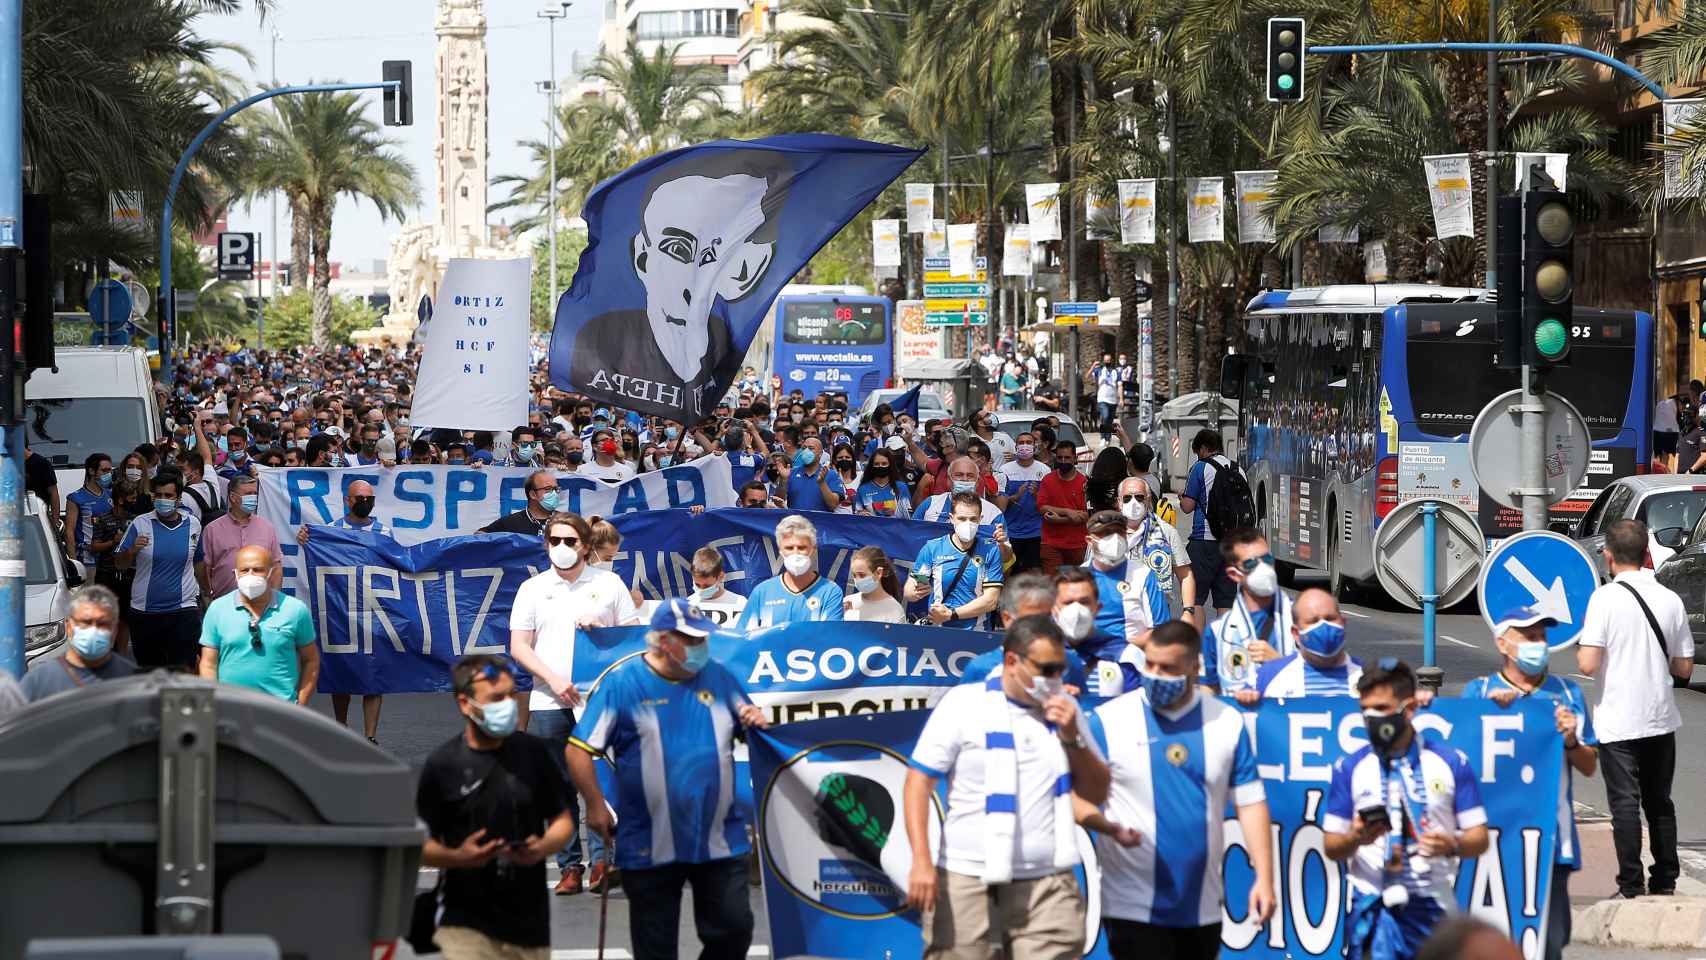 Los numerosos manifestantes herculanos han recorrido la principal avenida con soflamas contra Ortiz.